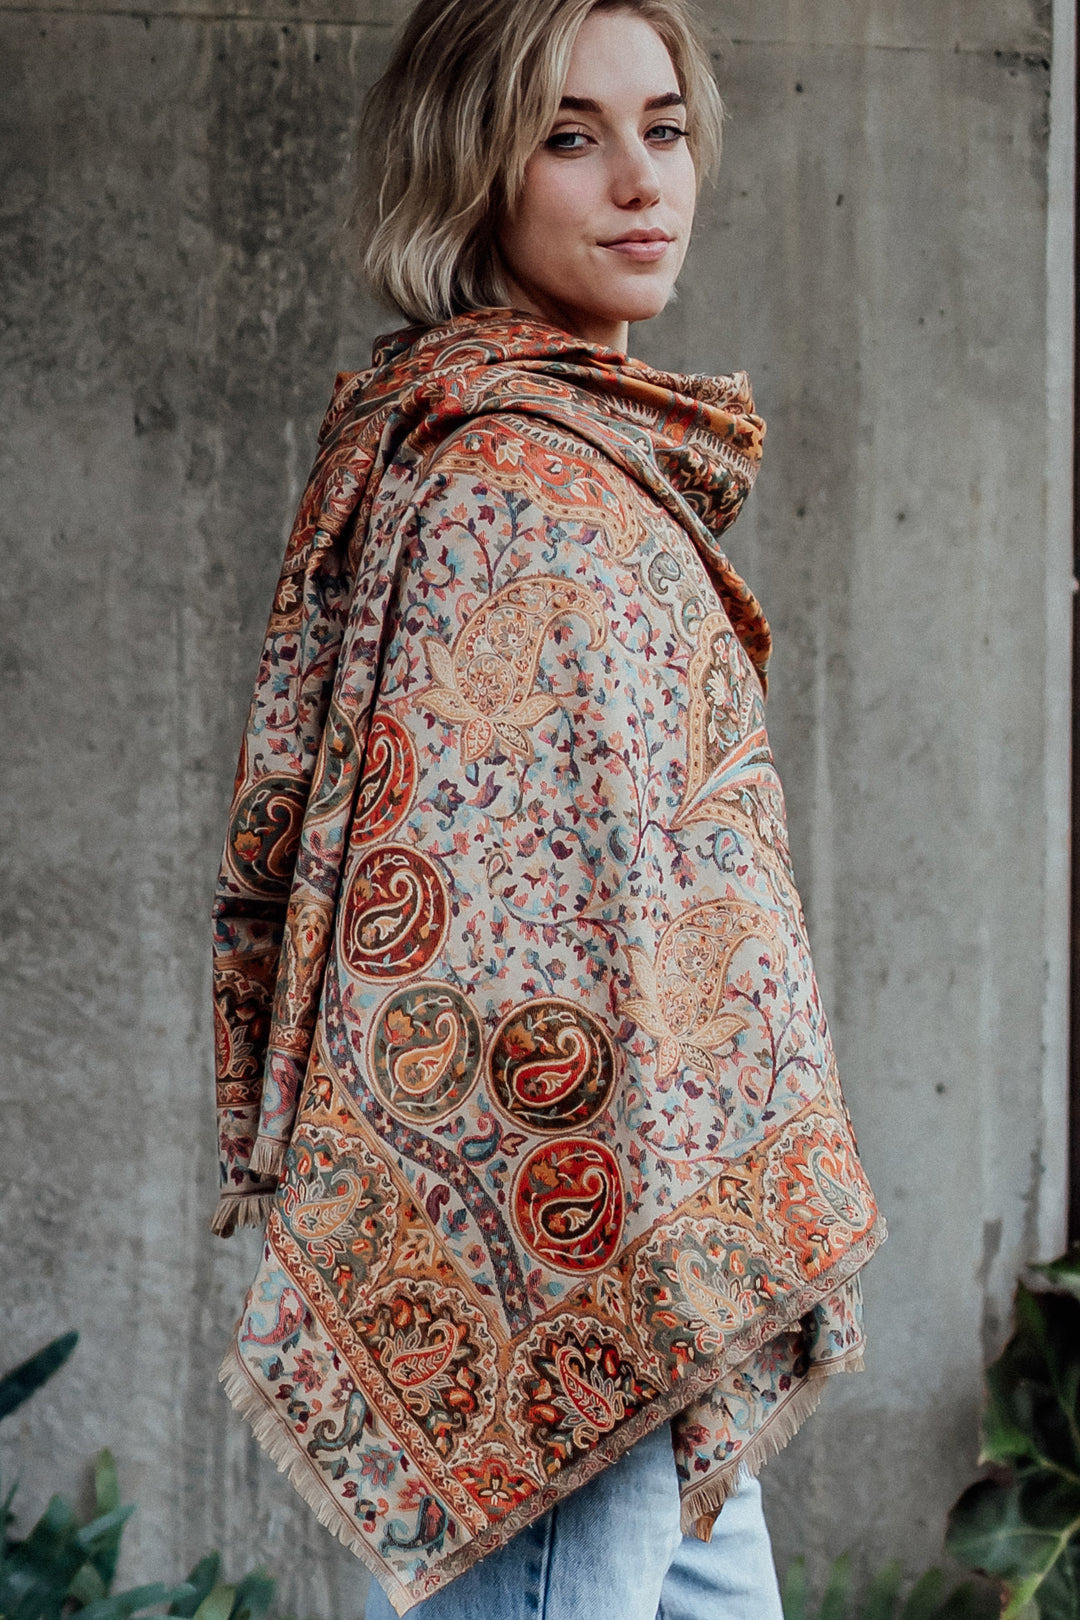 Kanika Kashmir wool shawl